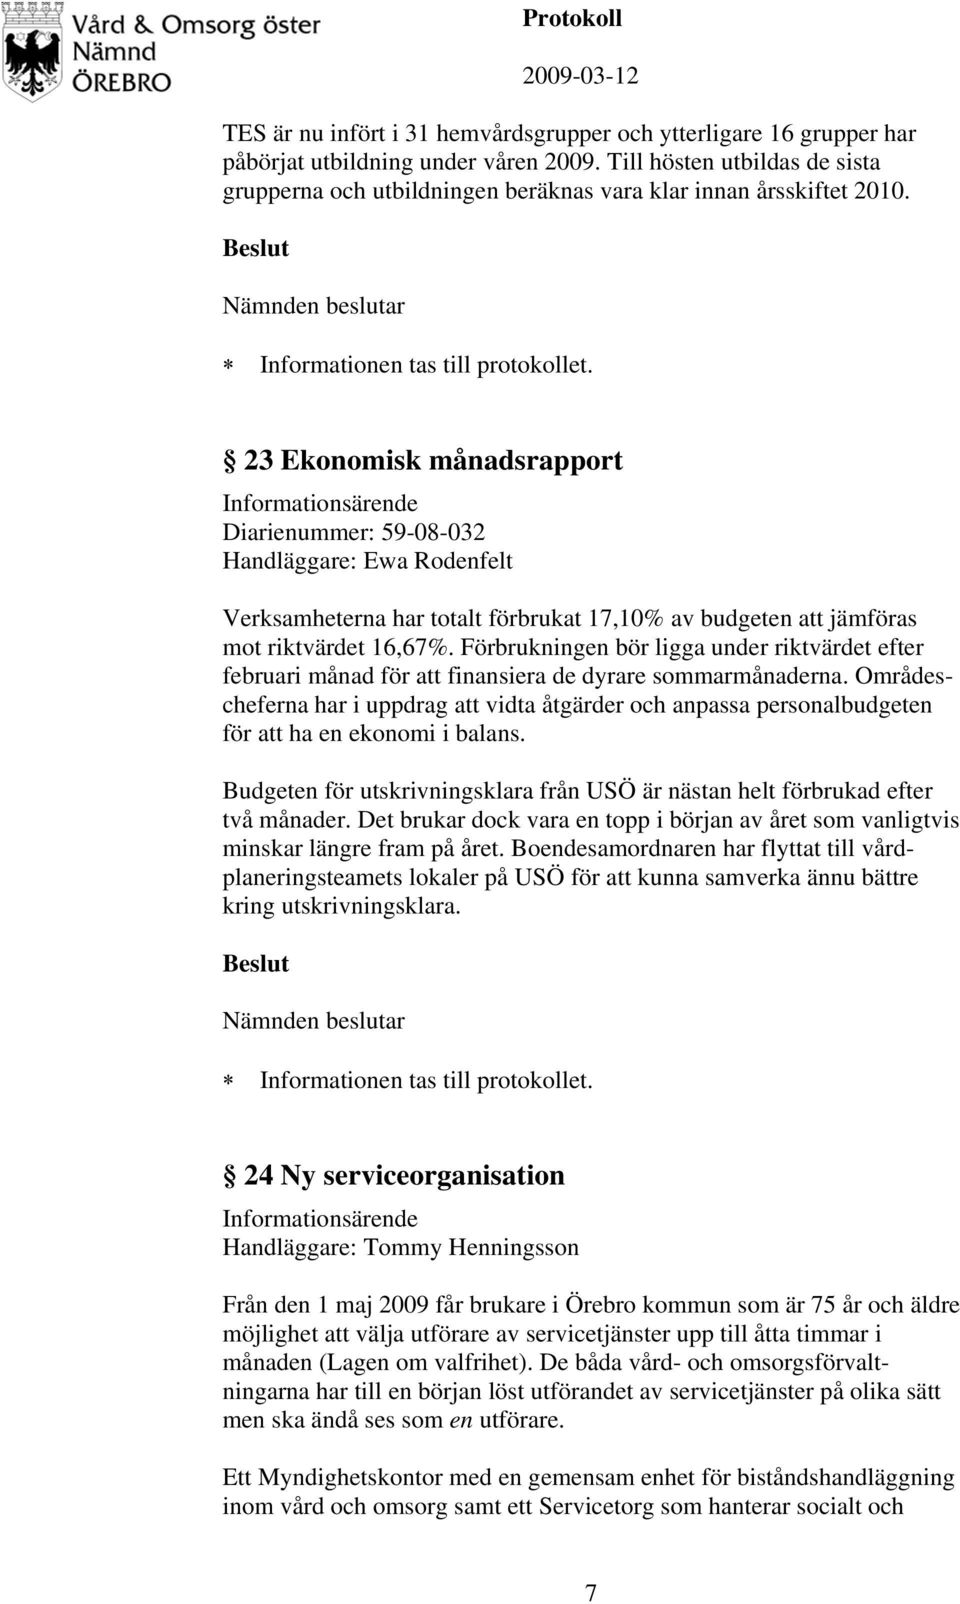 23 Ekonomisk månadsrapport Diarienummer: 59-08-032 Handläggare: Ewa Rodenfelt Verksamheterna har totalt förbrukat 17,10% av budgeten att jämföras mot riktvärdet 16,67%.